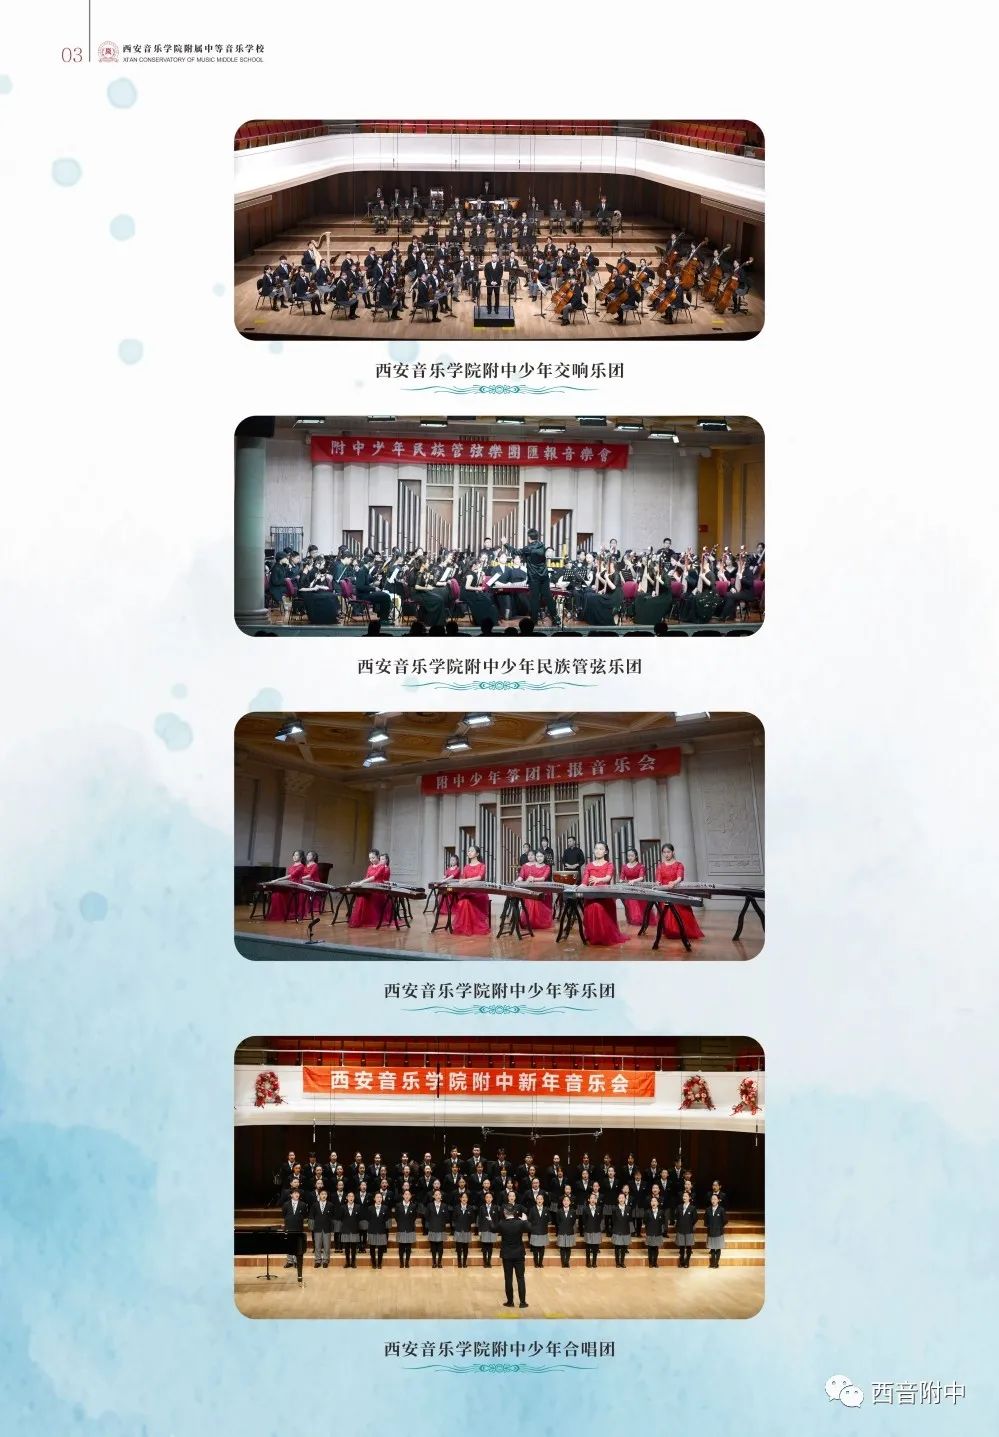 2022年西安音乐学院附属中等音乐学校招生简章